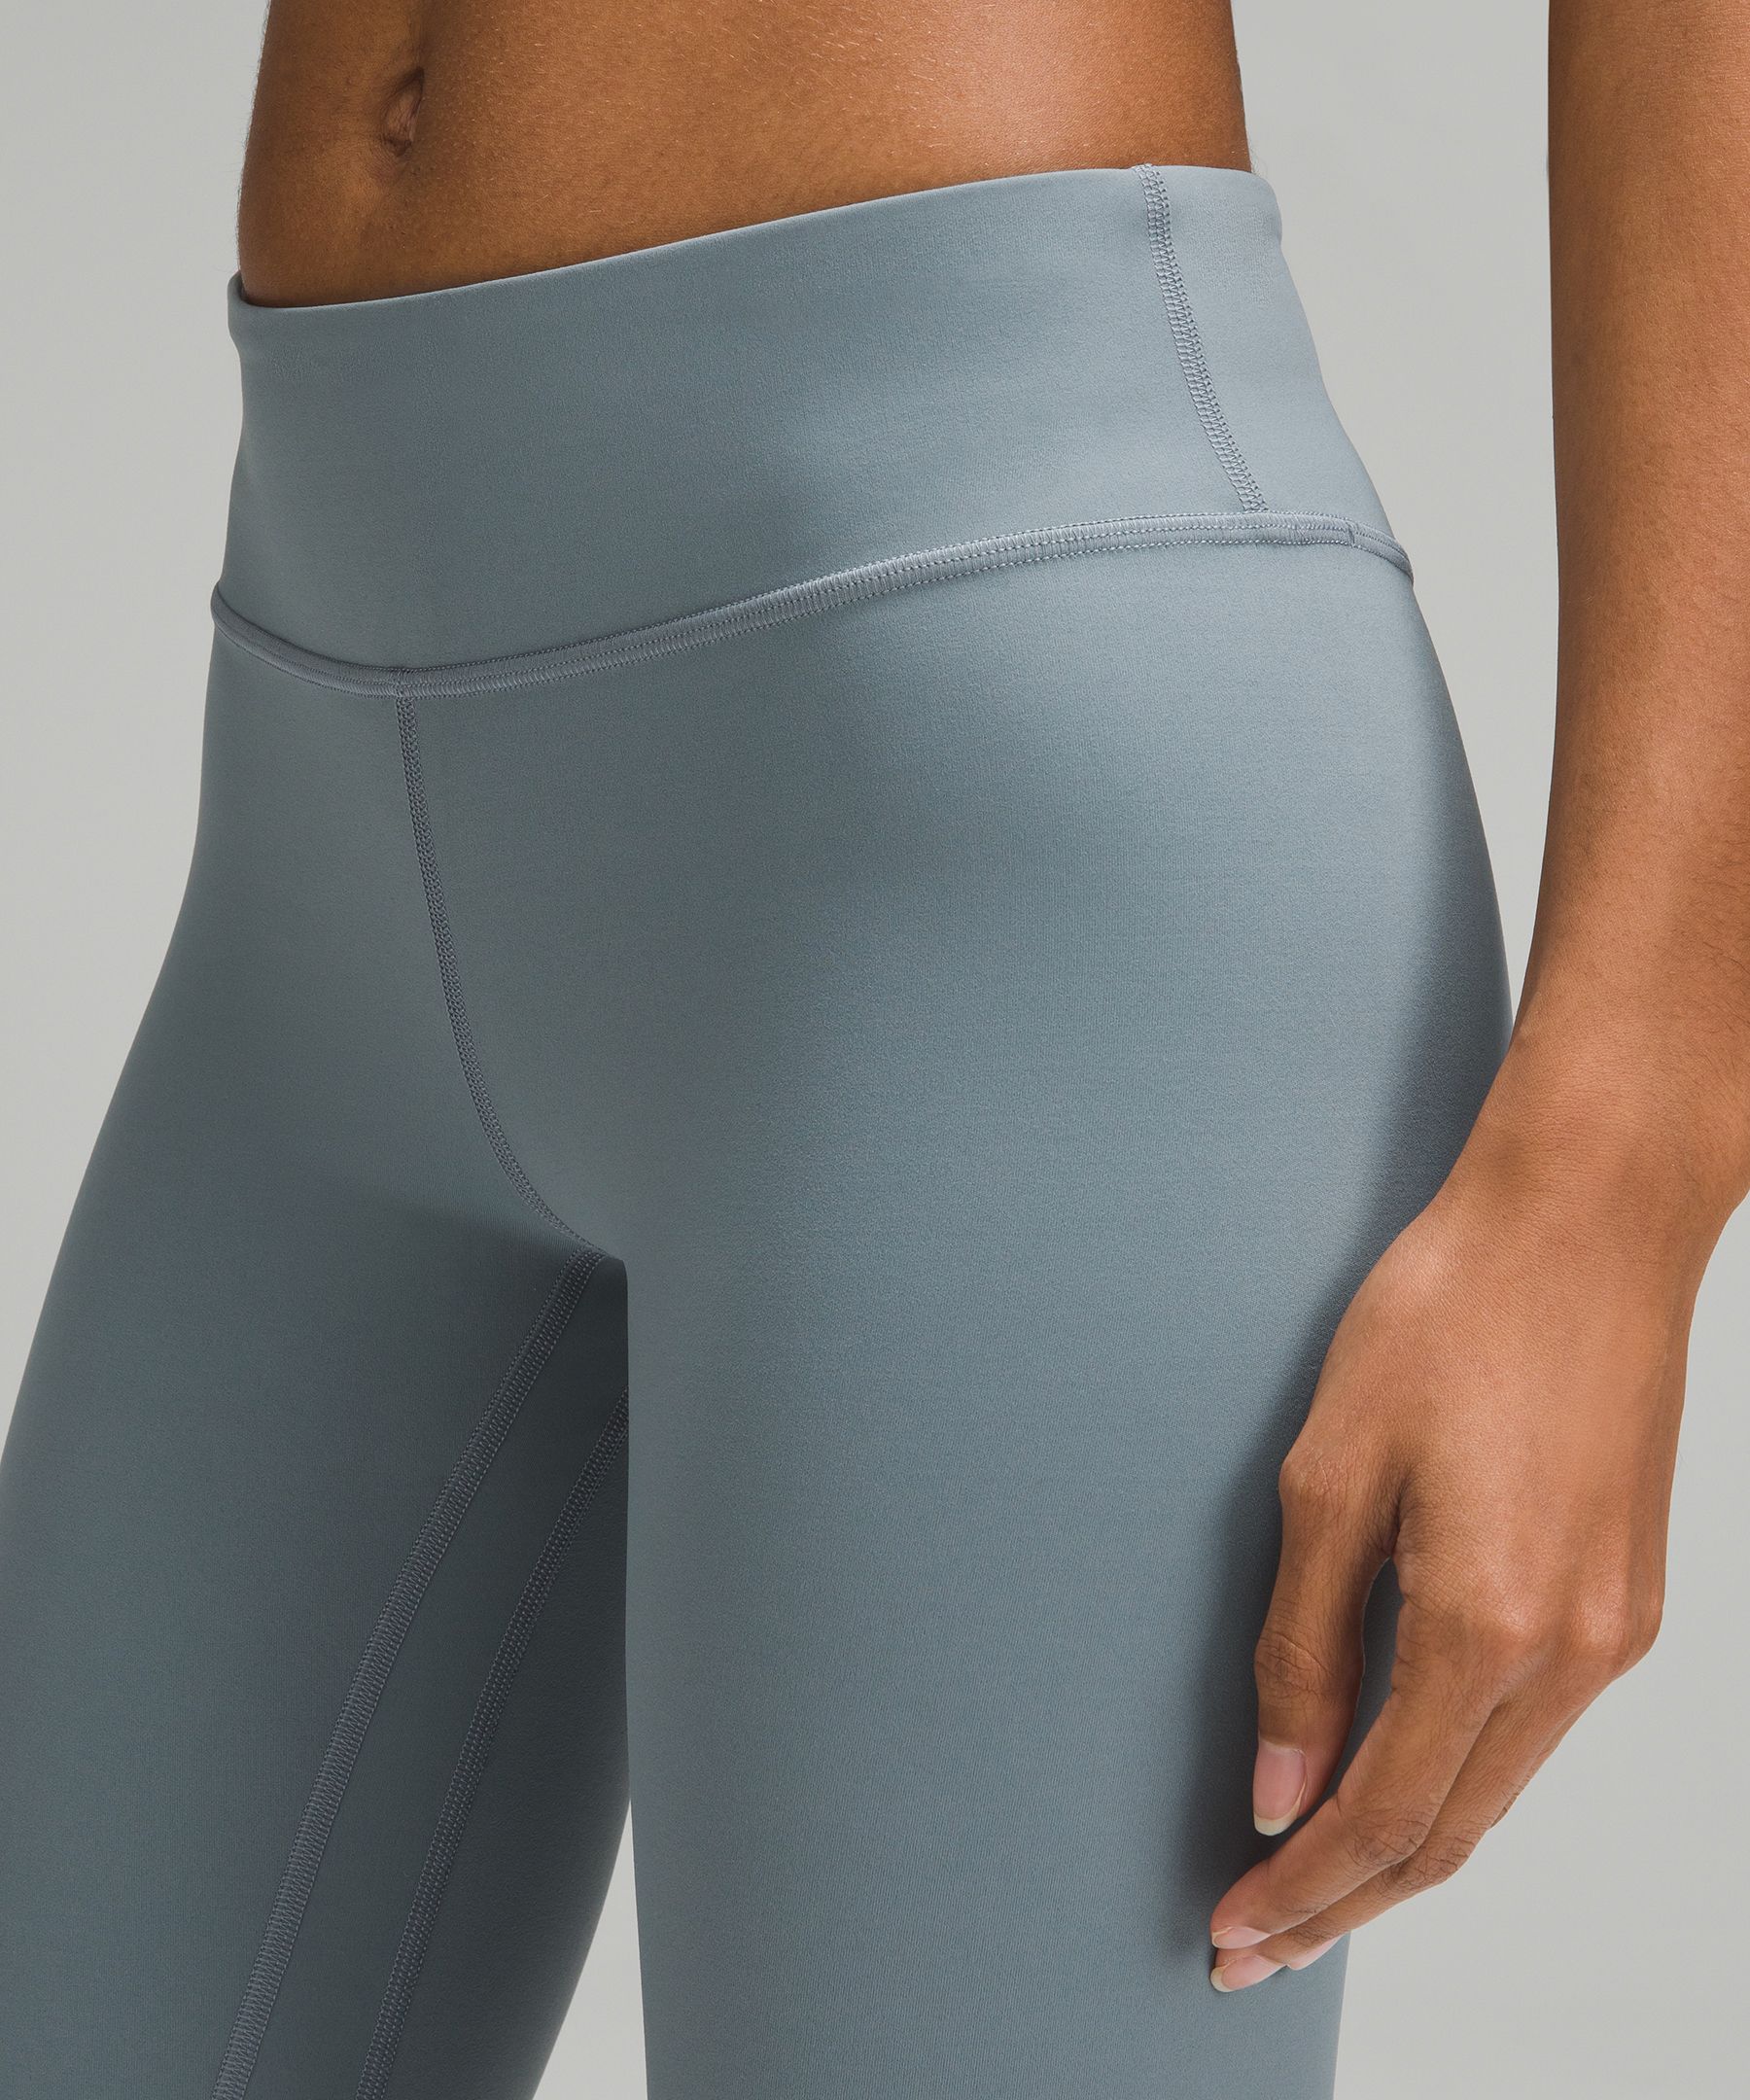 lululemon Align™ Low-Rise Pant 25, Women's Pants